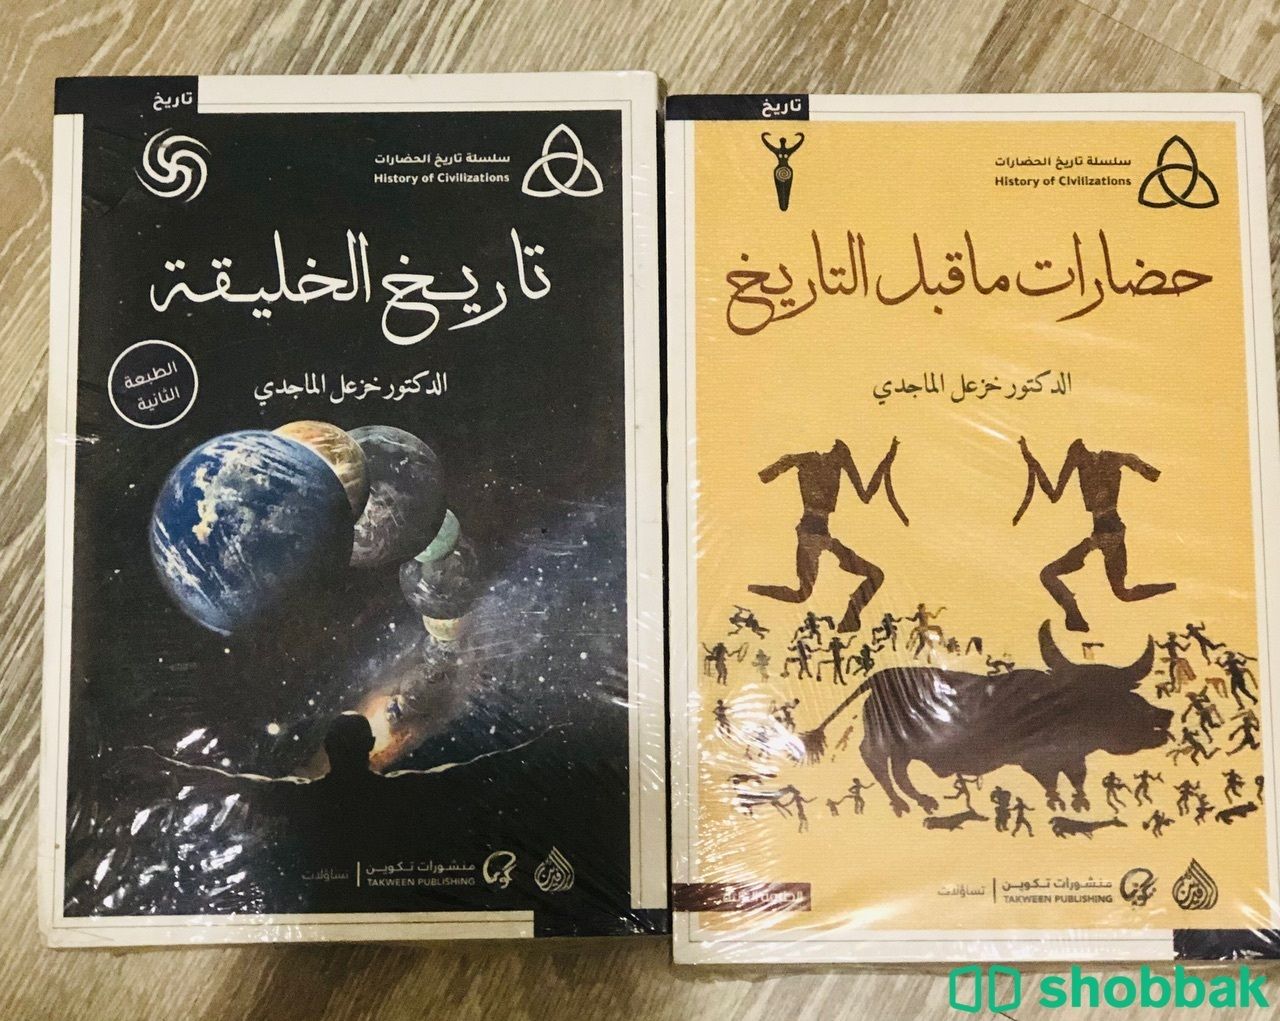 📢نسخ جديدة كتاب حضارات ماقبل التاريخ/تاريخ الخليقة Shobbak Saudi Arabia